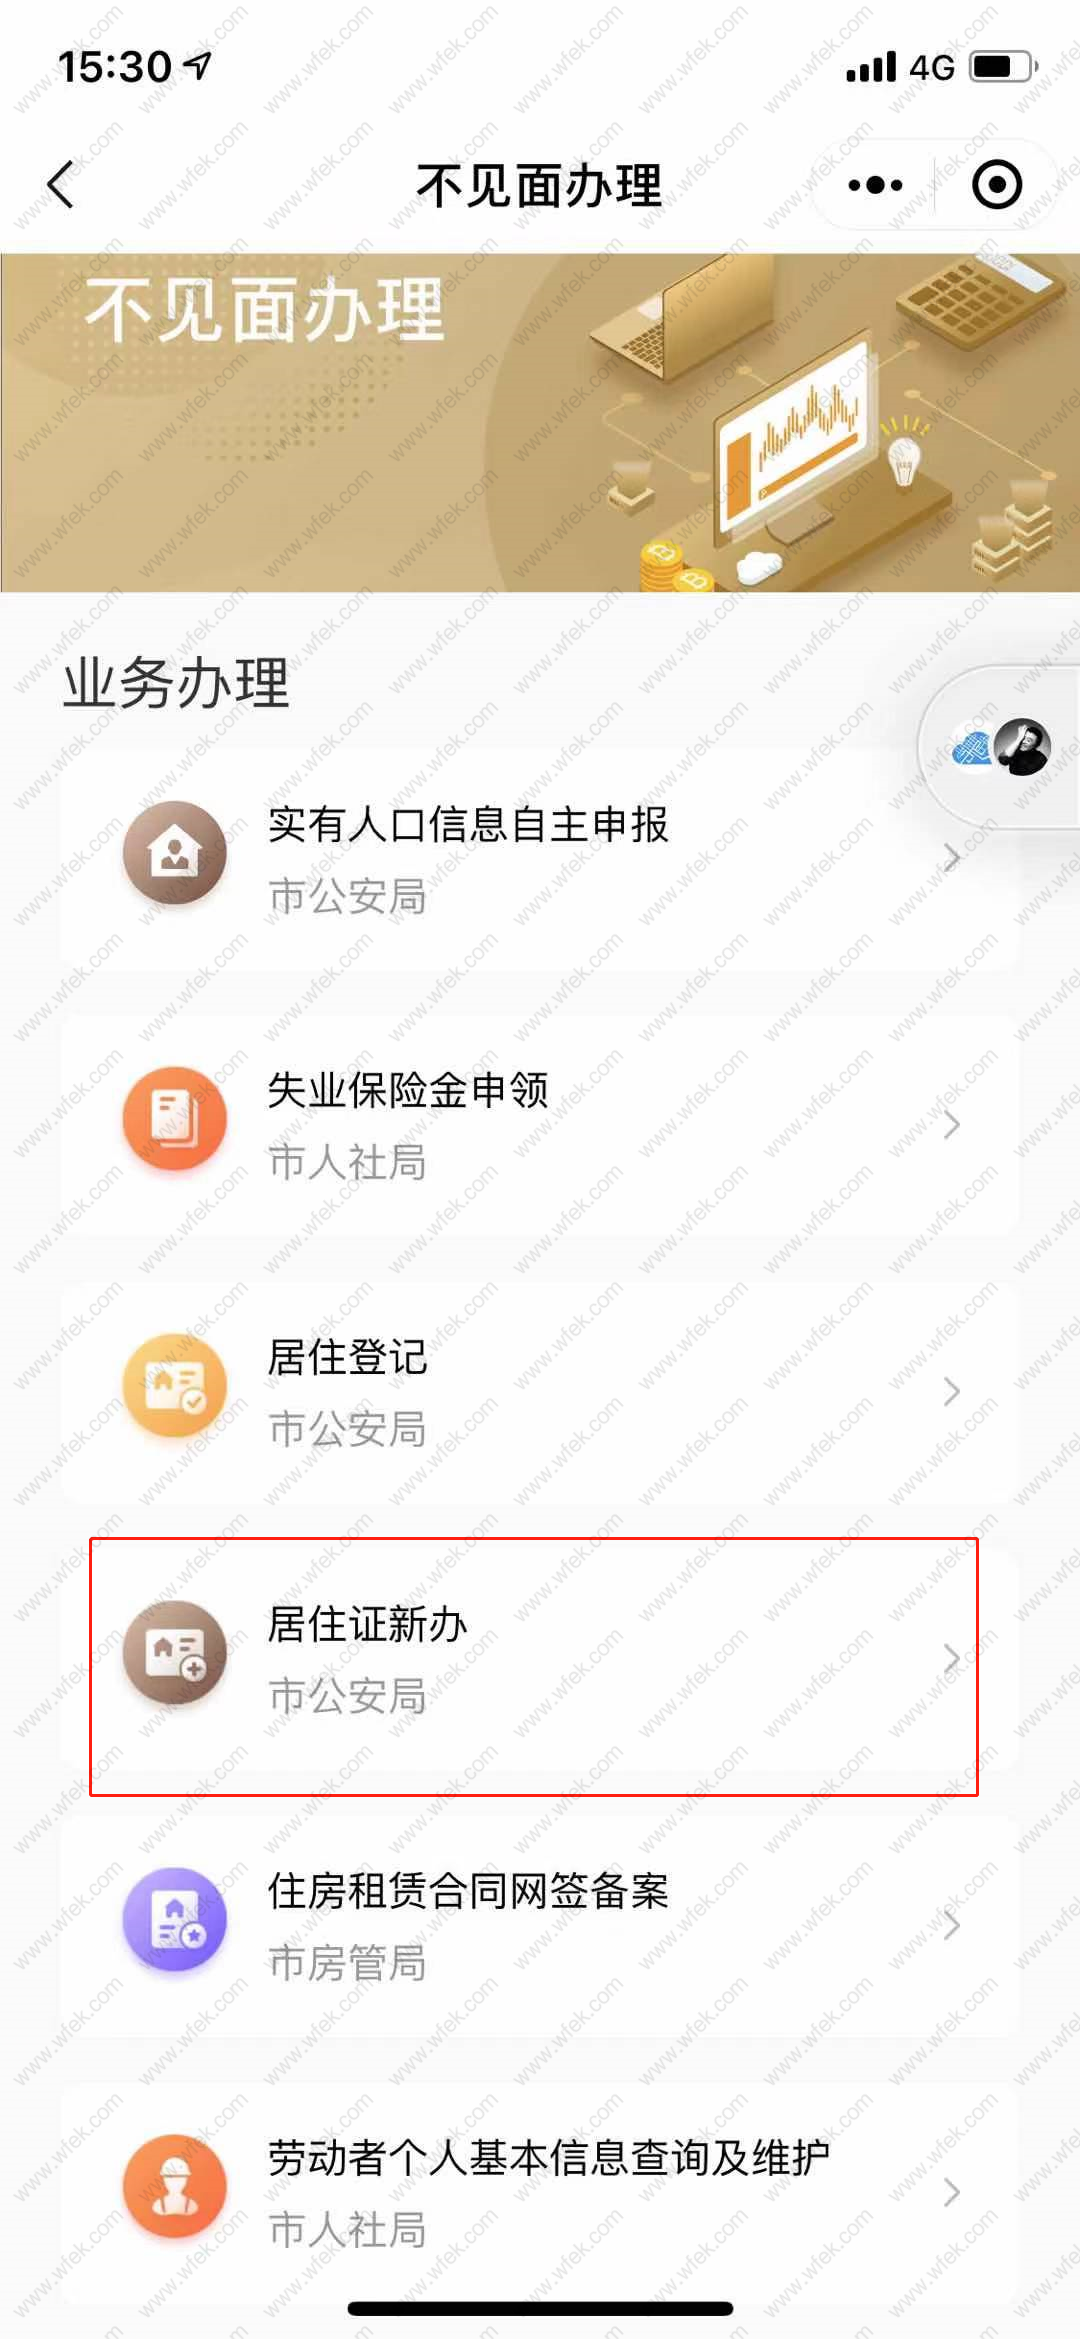 上海居住证网上办理流程